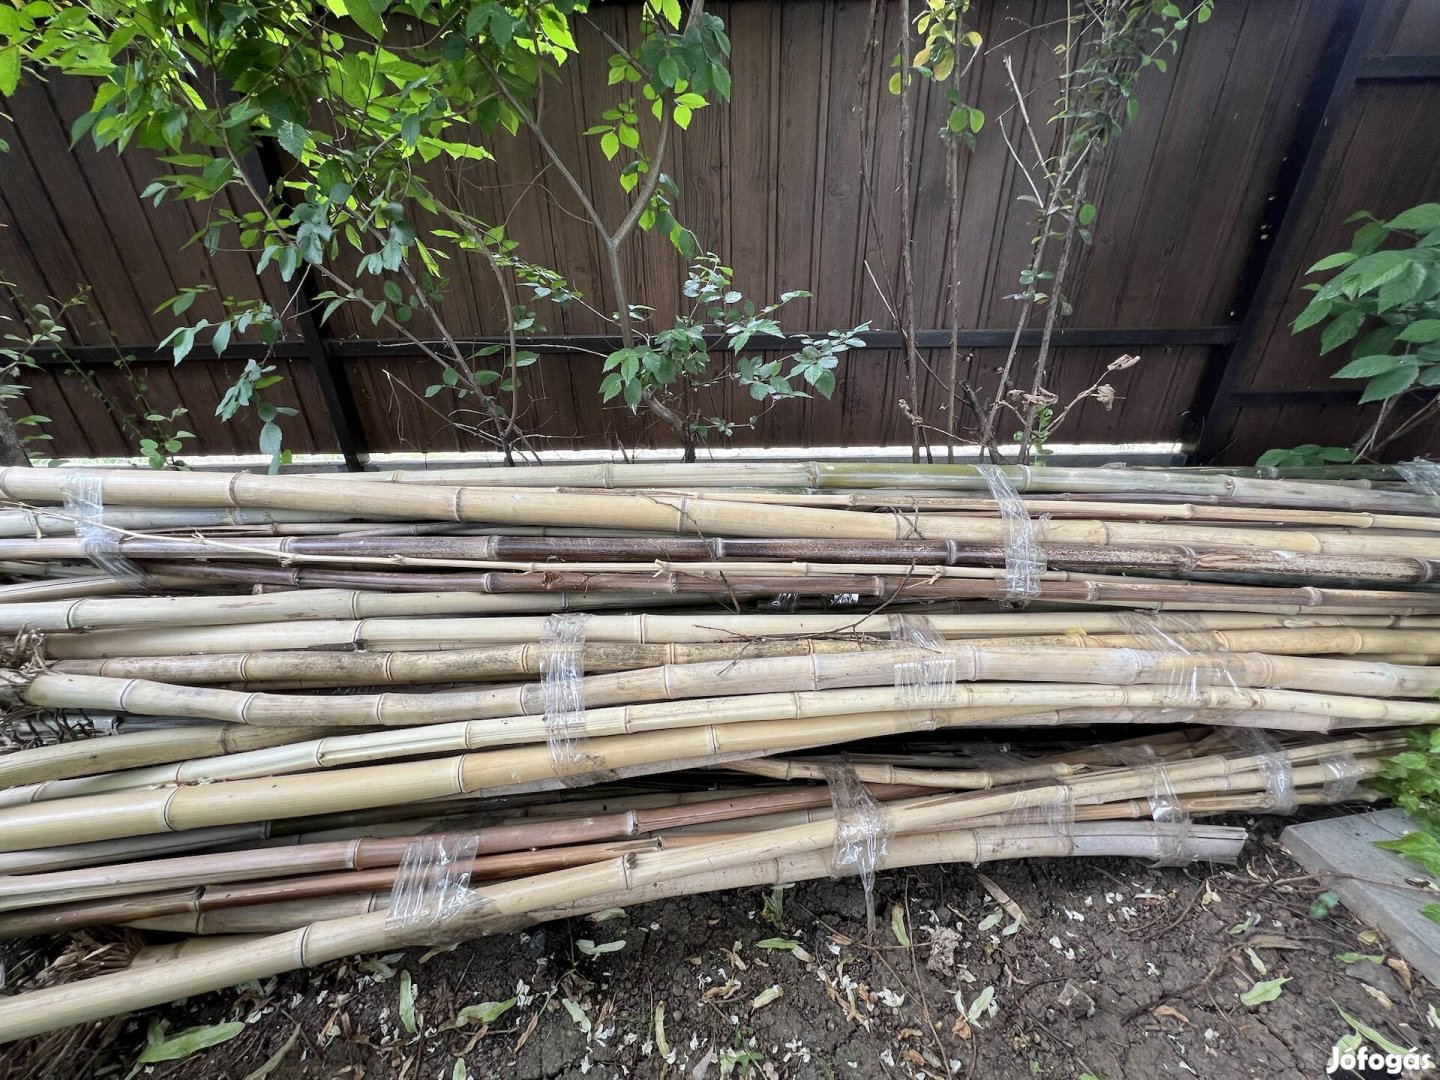 Eladó bambuszkarók